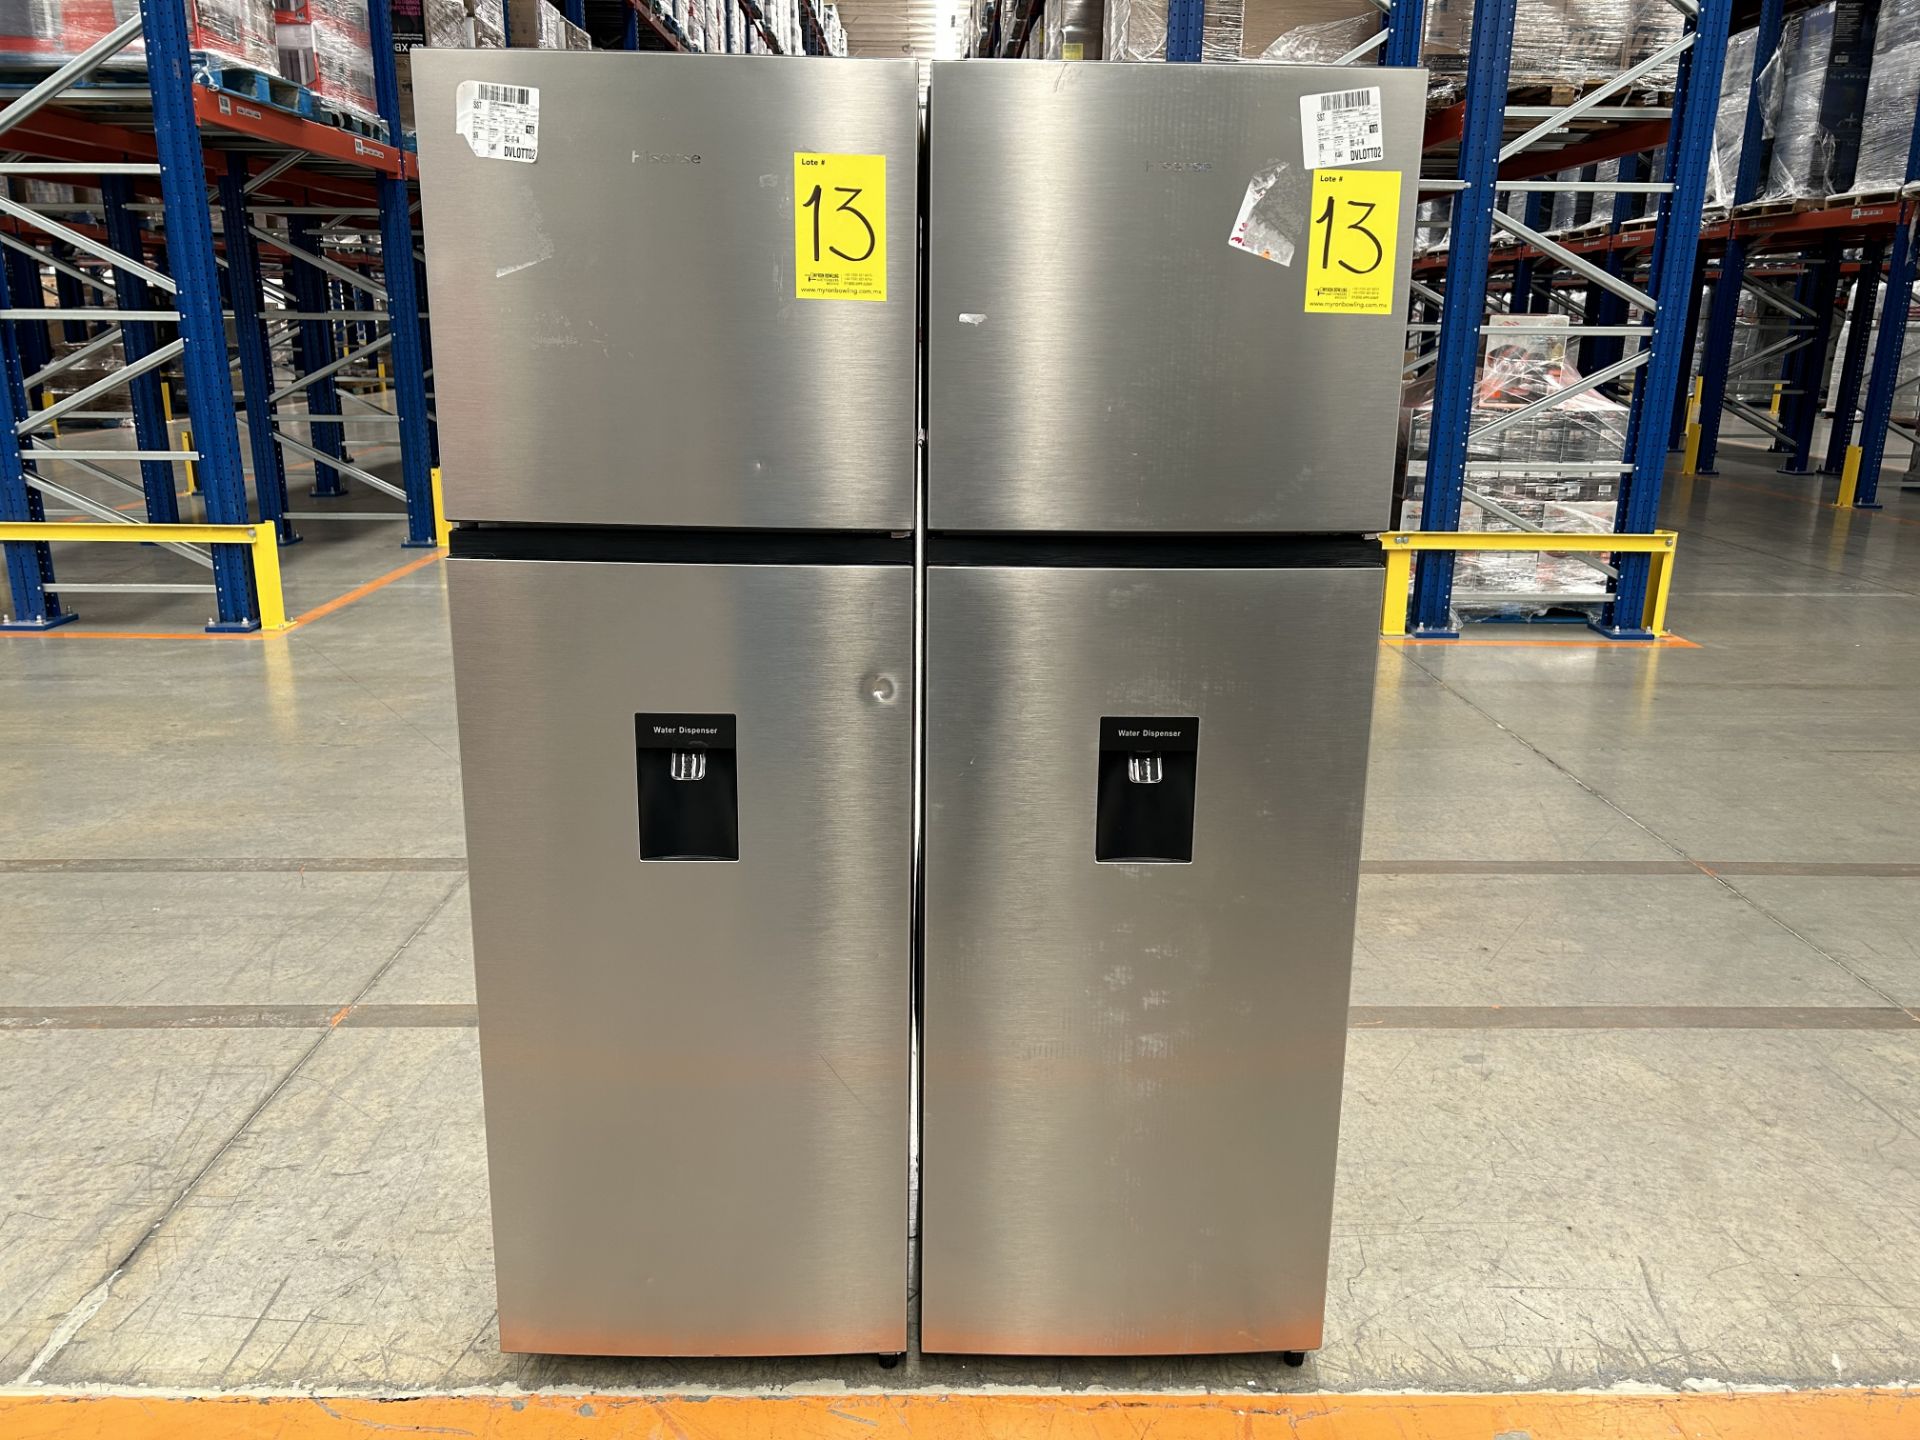 Lote de 2 refrigeradores contiene: 1 refrigerador con dispensador de agua Marca HISENSE, Modelo RT9